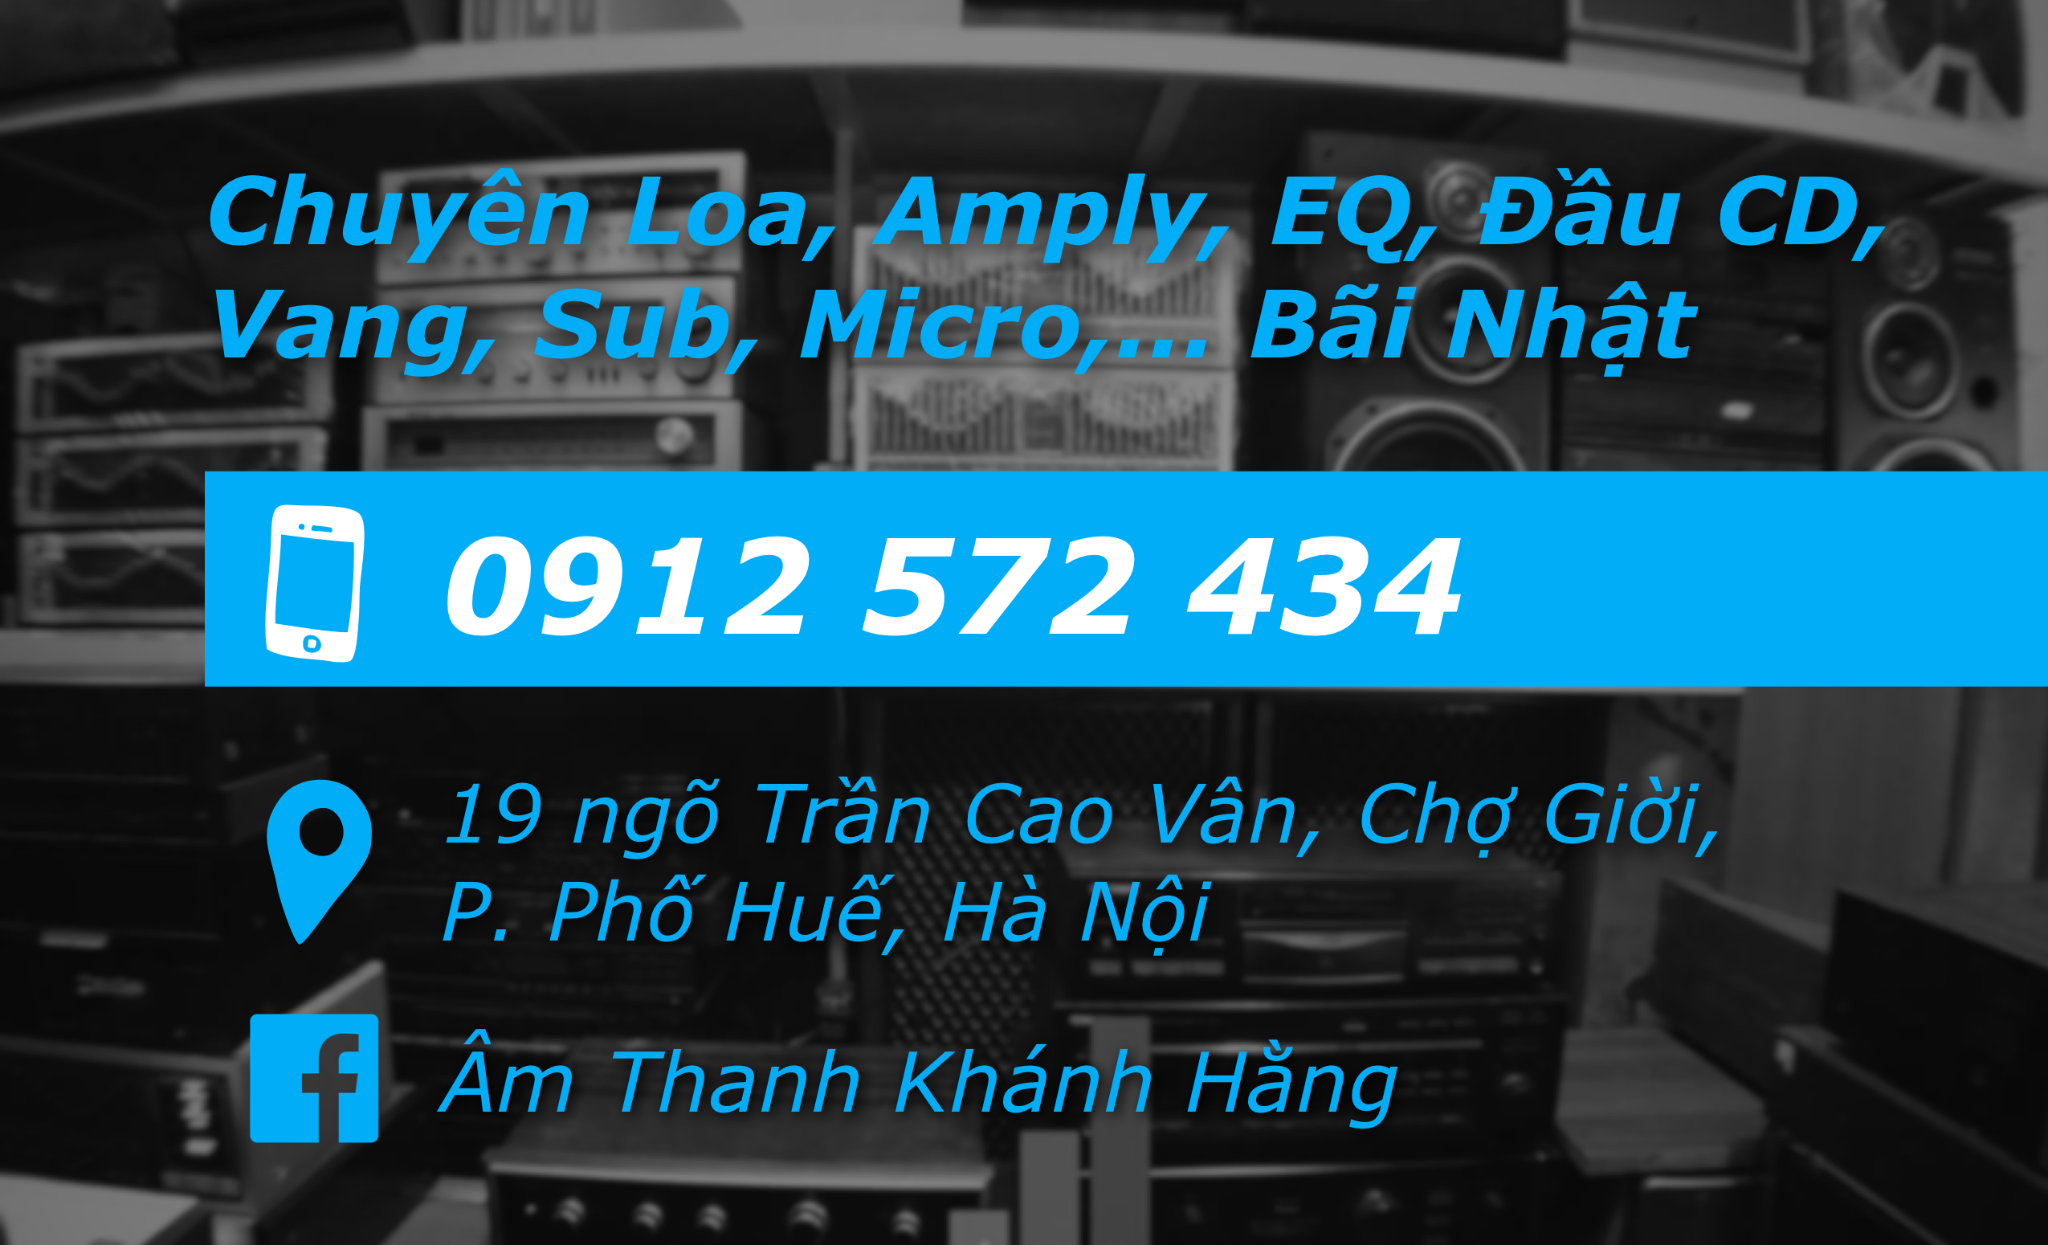 Âm Thanh Khánh Hằng - amthanhbai.com